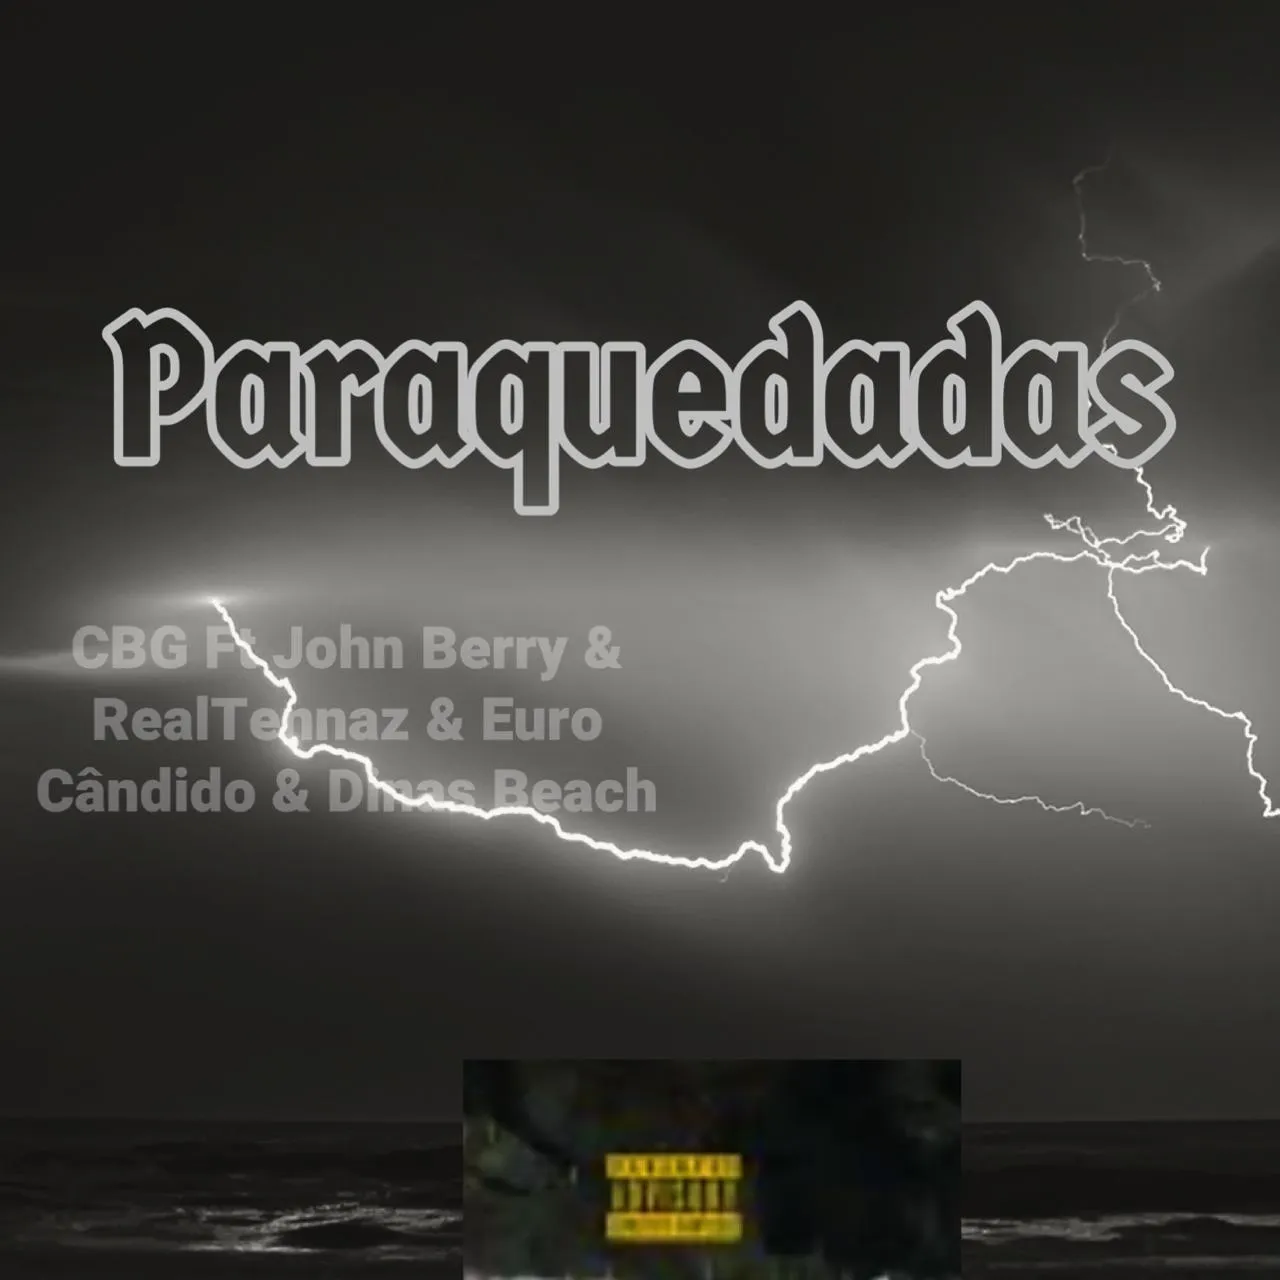 CBG, Johnny Berry, Euro Cândido & Real Tennaz, Dinas Beach - Paraquedadas